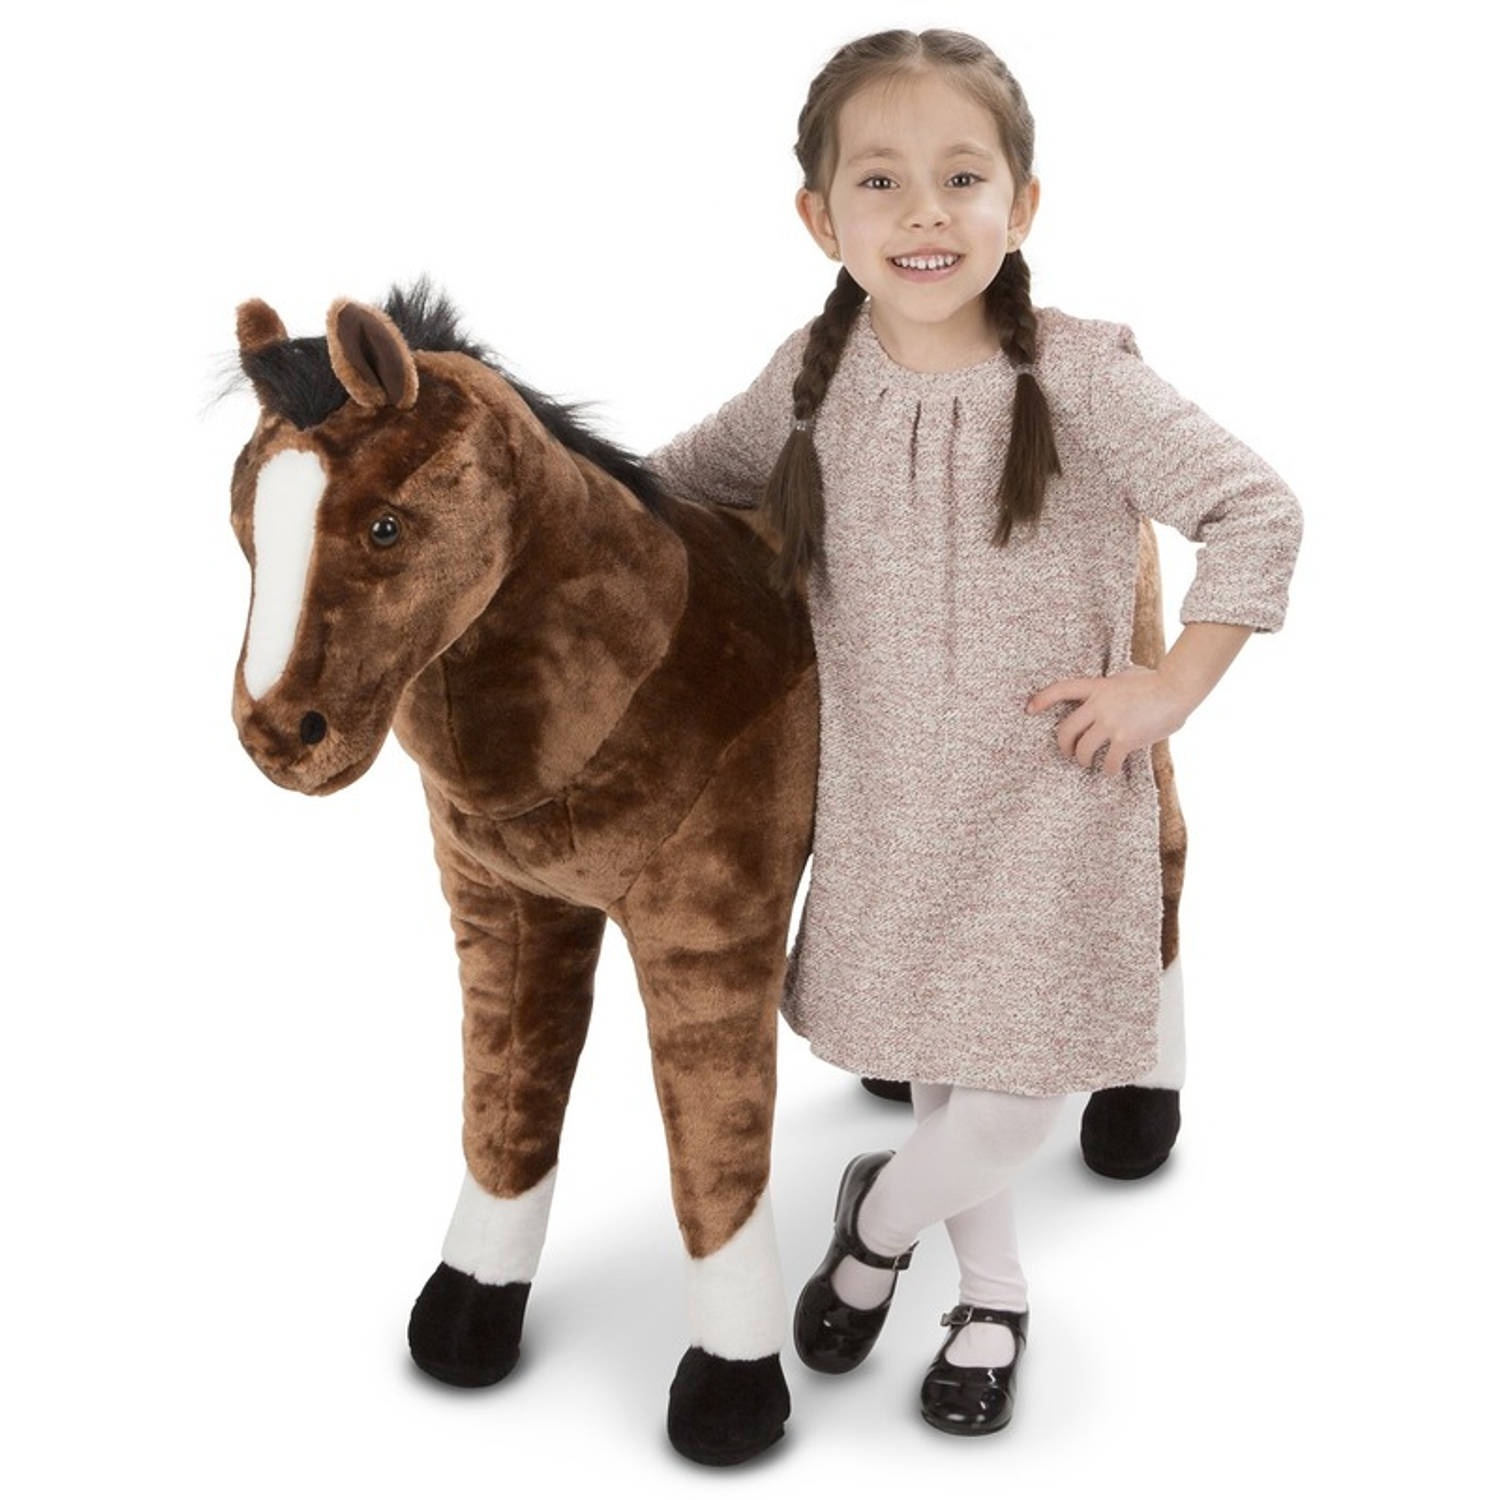 Meditatief toezicht houden op canvas Melissa & Doug pluche paarden knuffel 99 cm - Pluche speelgoed  knuffeldieren voor kinderen | Blokker